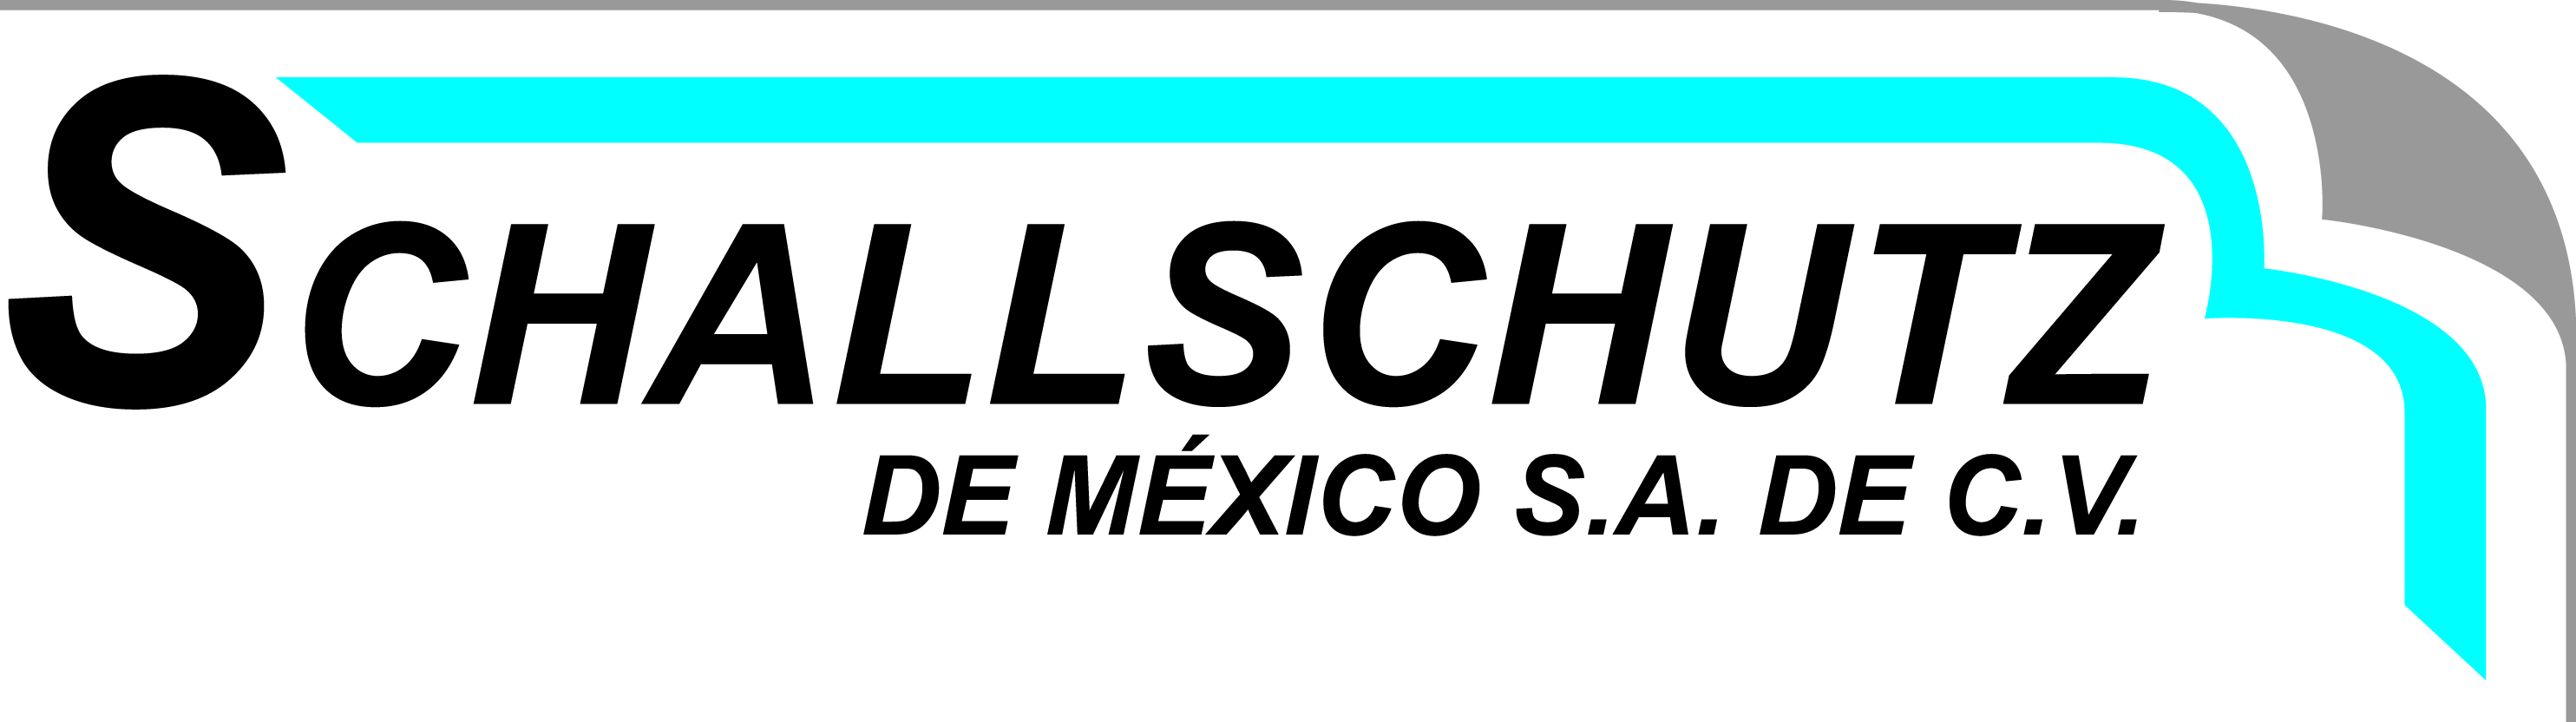 SchallSchutz de México 